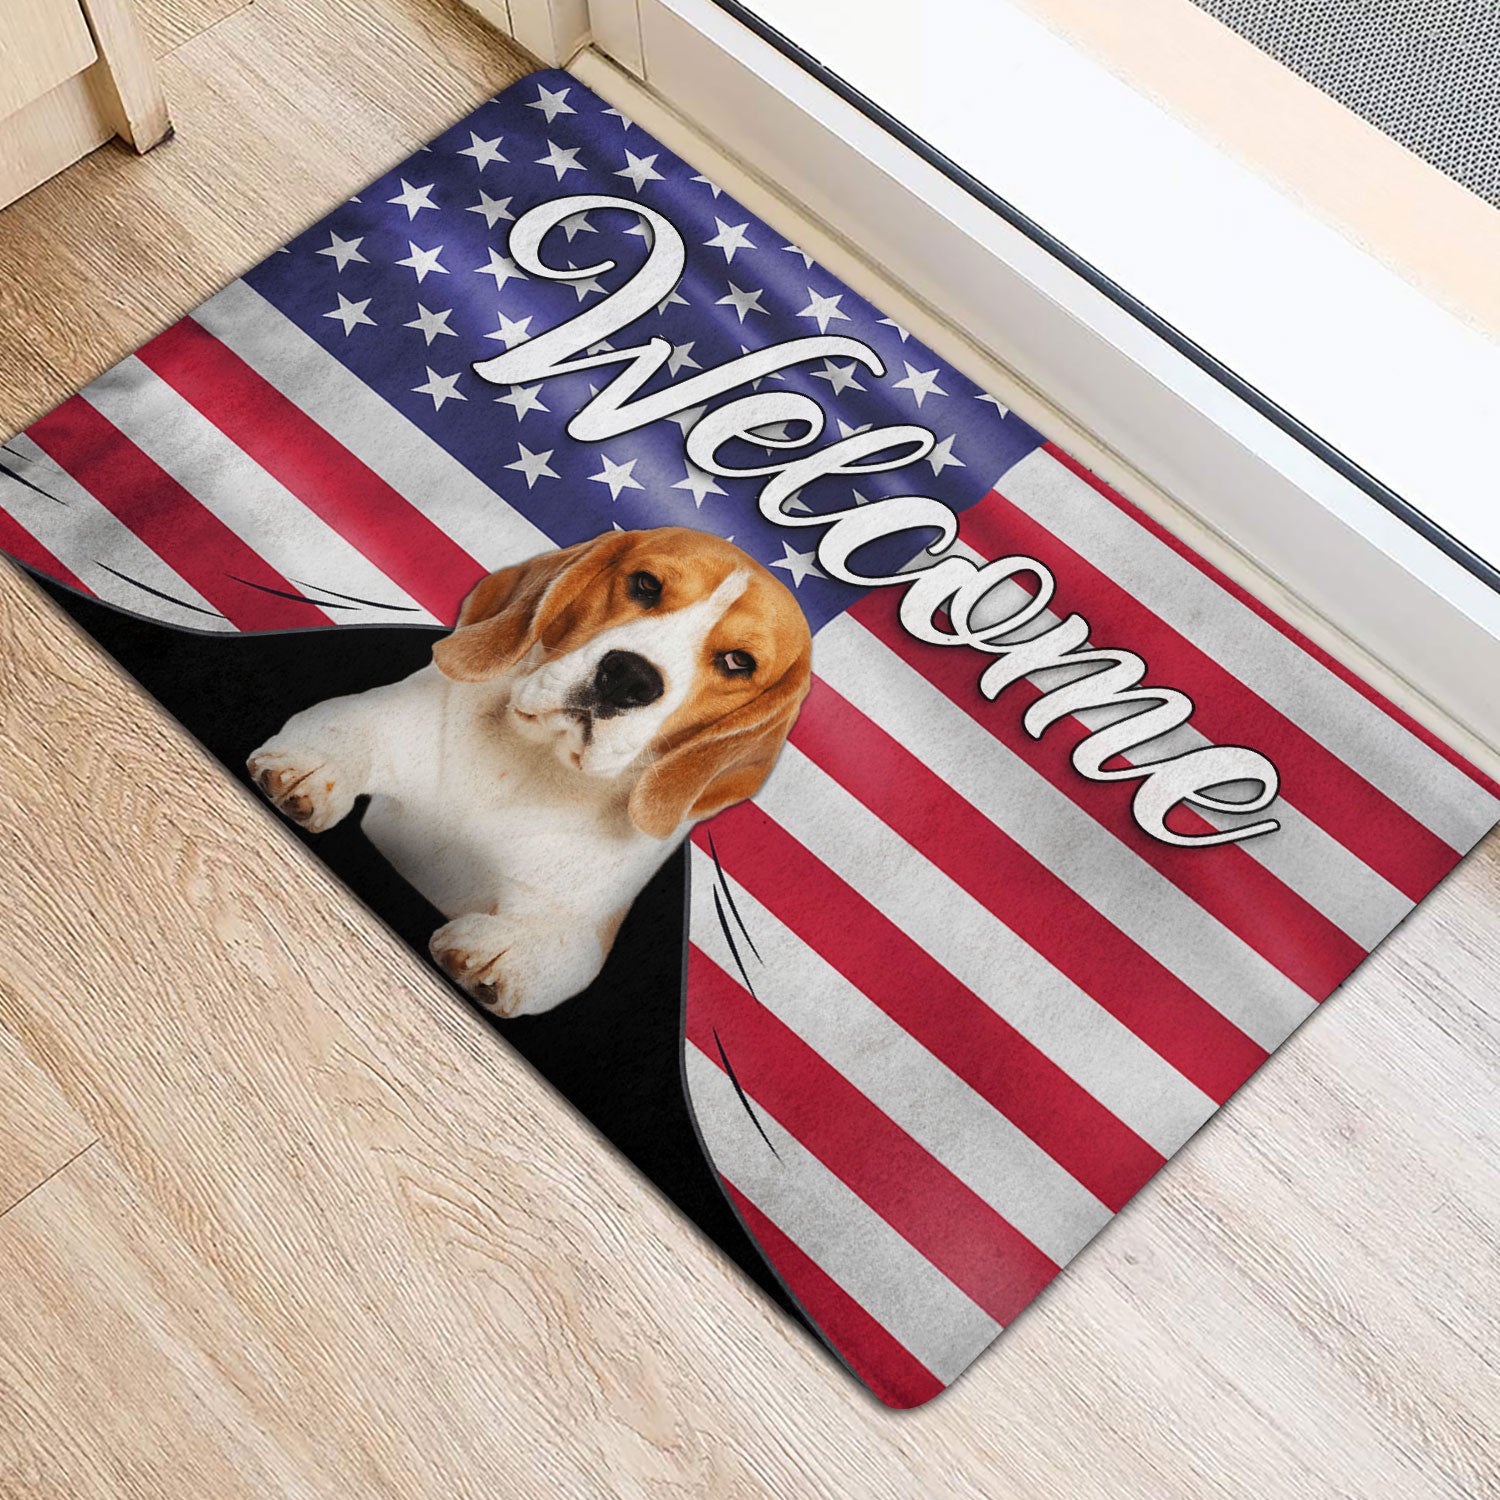 Ohaprints-Doormat-Outdoor-Indoor-Funny-Beagle-Dog-Welcome-American-Flag-Usa-Patriotic-Rubber-Door-Mat-75-